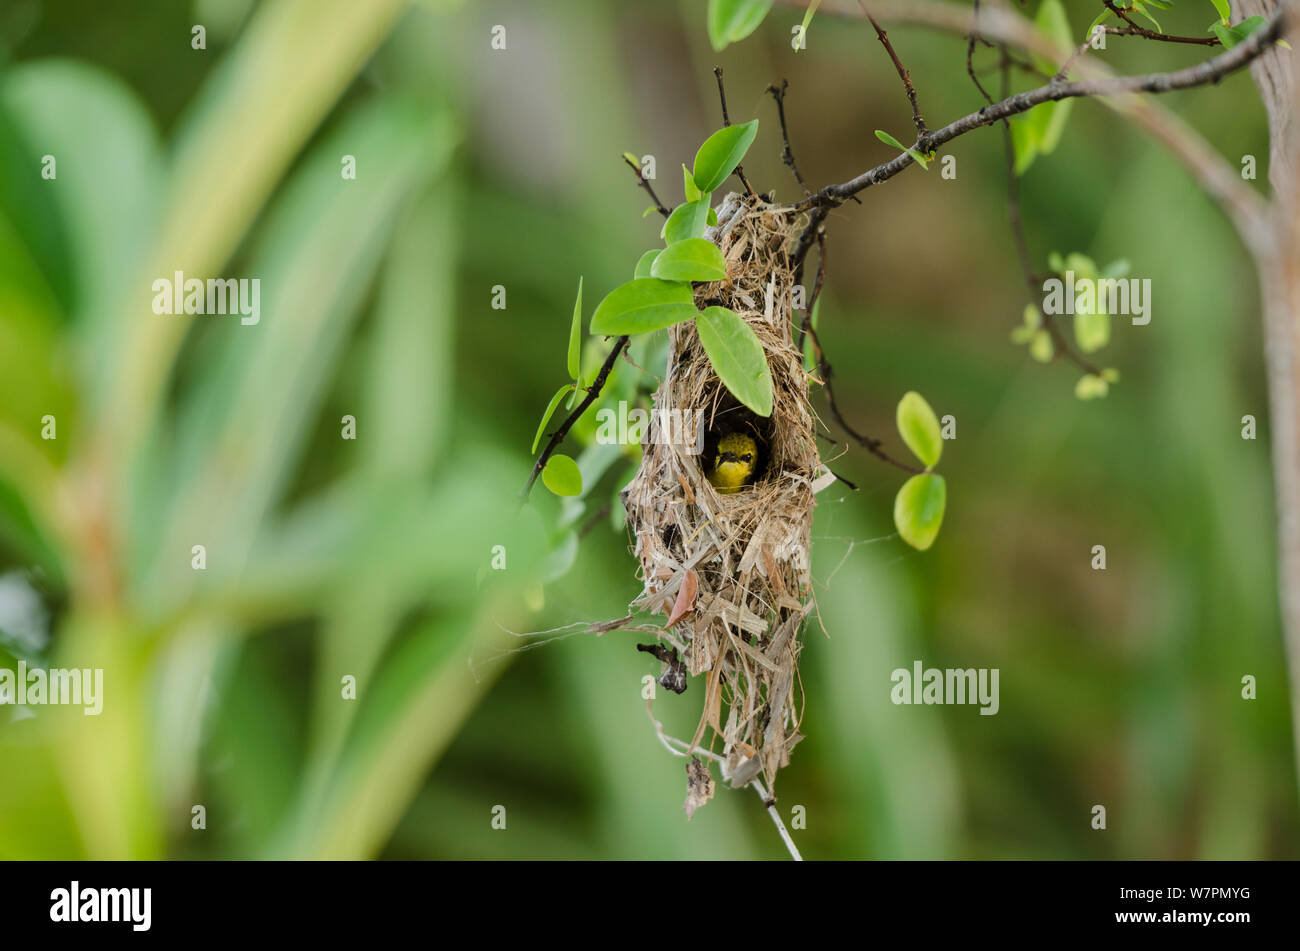 Olive femelle de secours / Yellow-bellied Sunbird dans son nid (Chalcomitra jugularis) en Australie. Banque D'Images